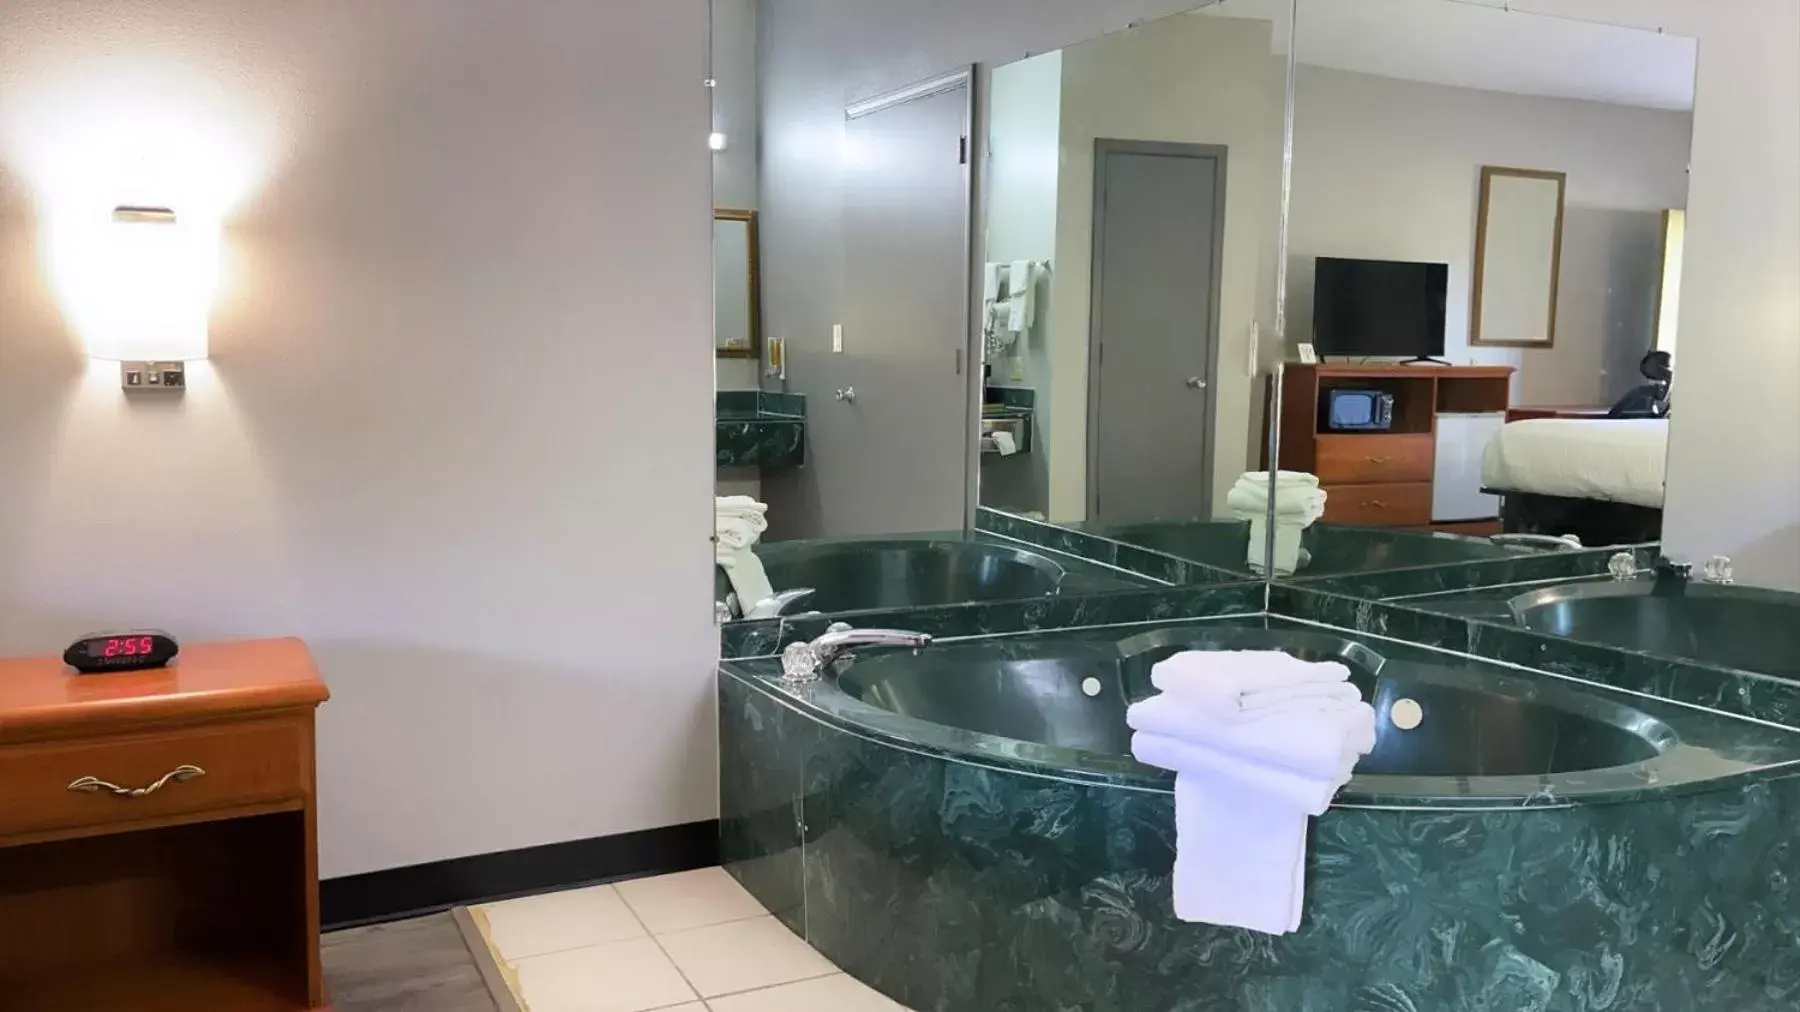 Hot Tub, Bathroom in Days Inn by Wyndham North Little Rock Maumelle